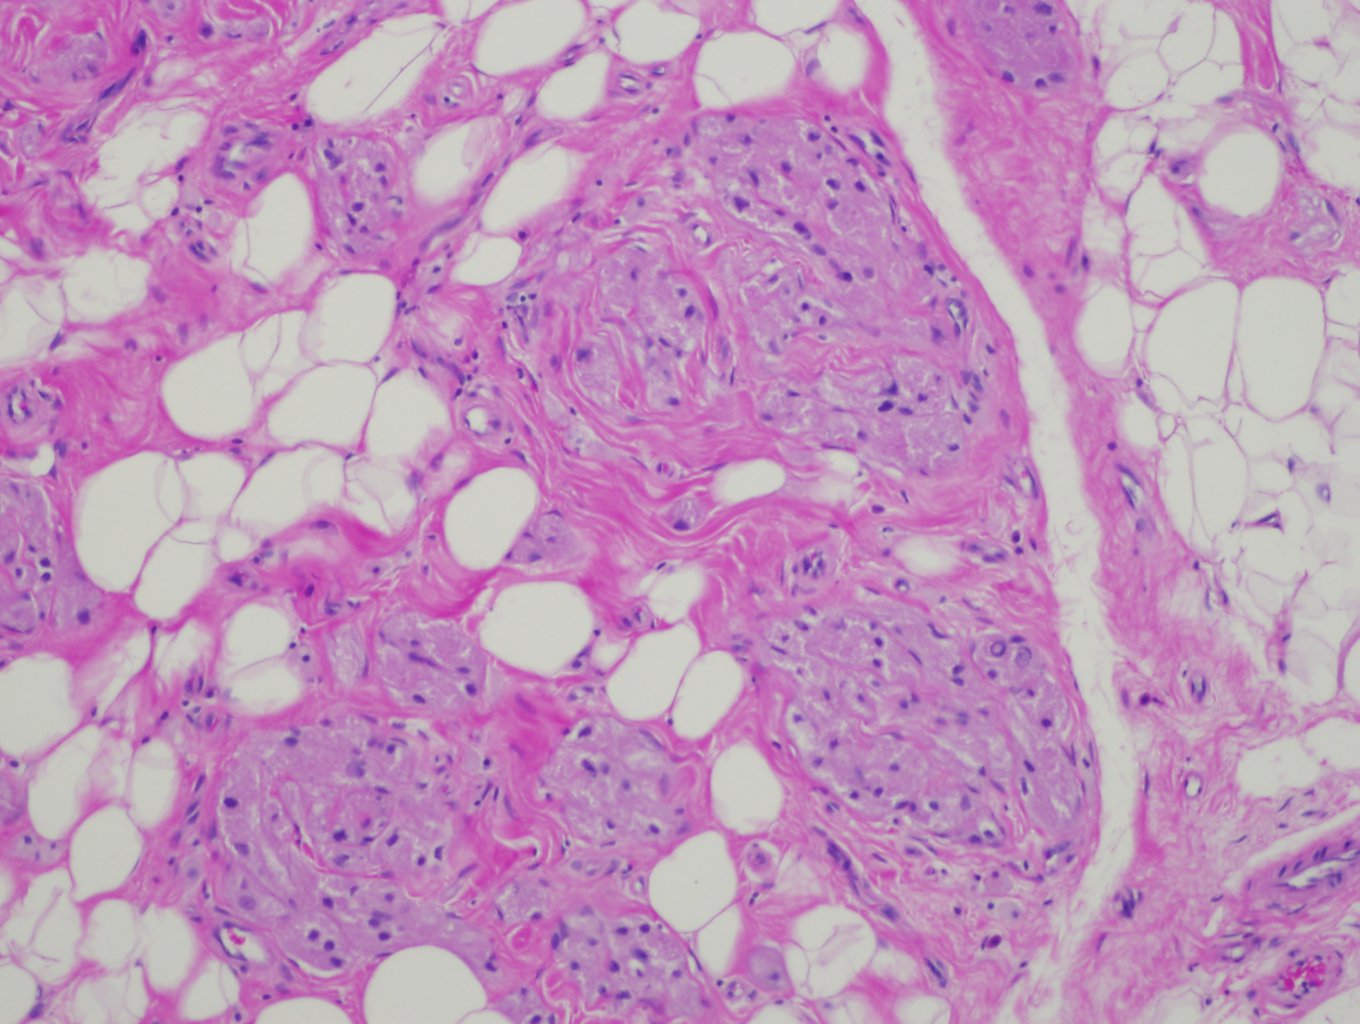 Granular Cell Tumor